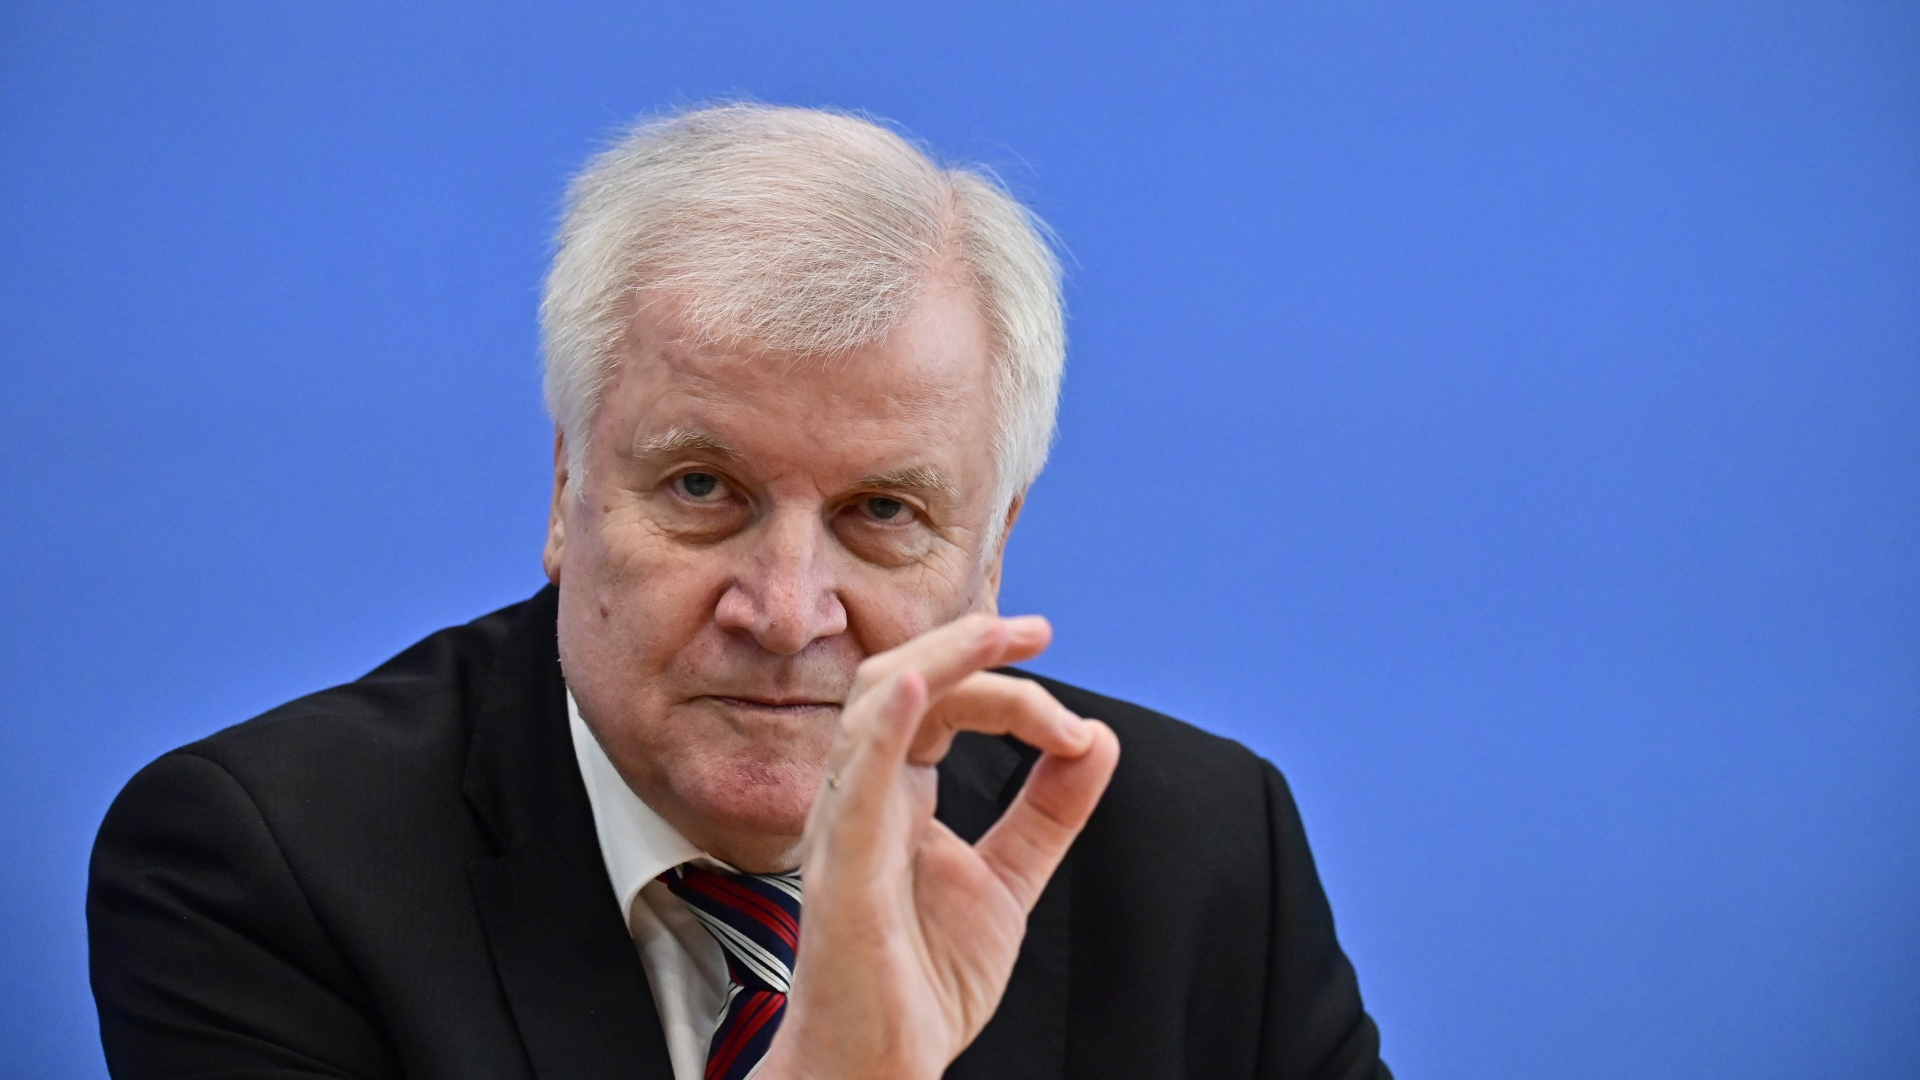 Innenminister Horst Seehofer gestikuliert auf einer Pressekonferenz zur Bekanntgabe der Asylzahlen für 2018. | Bildquelle: AFP